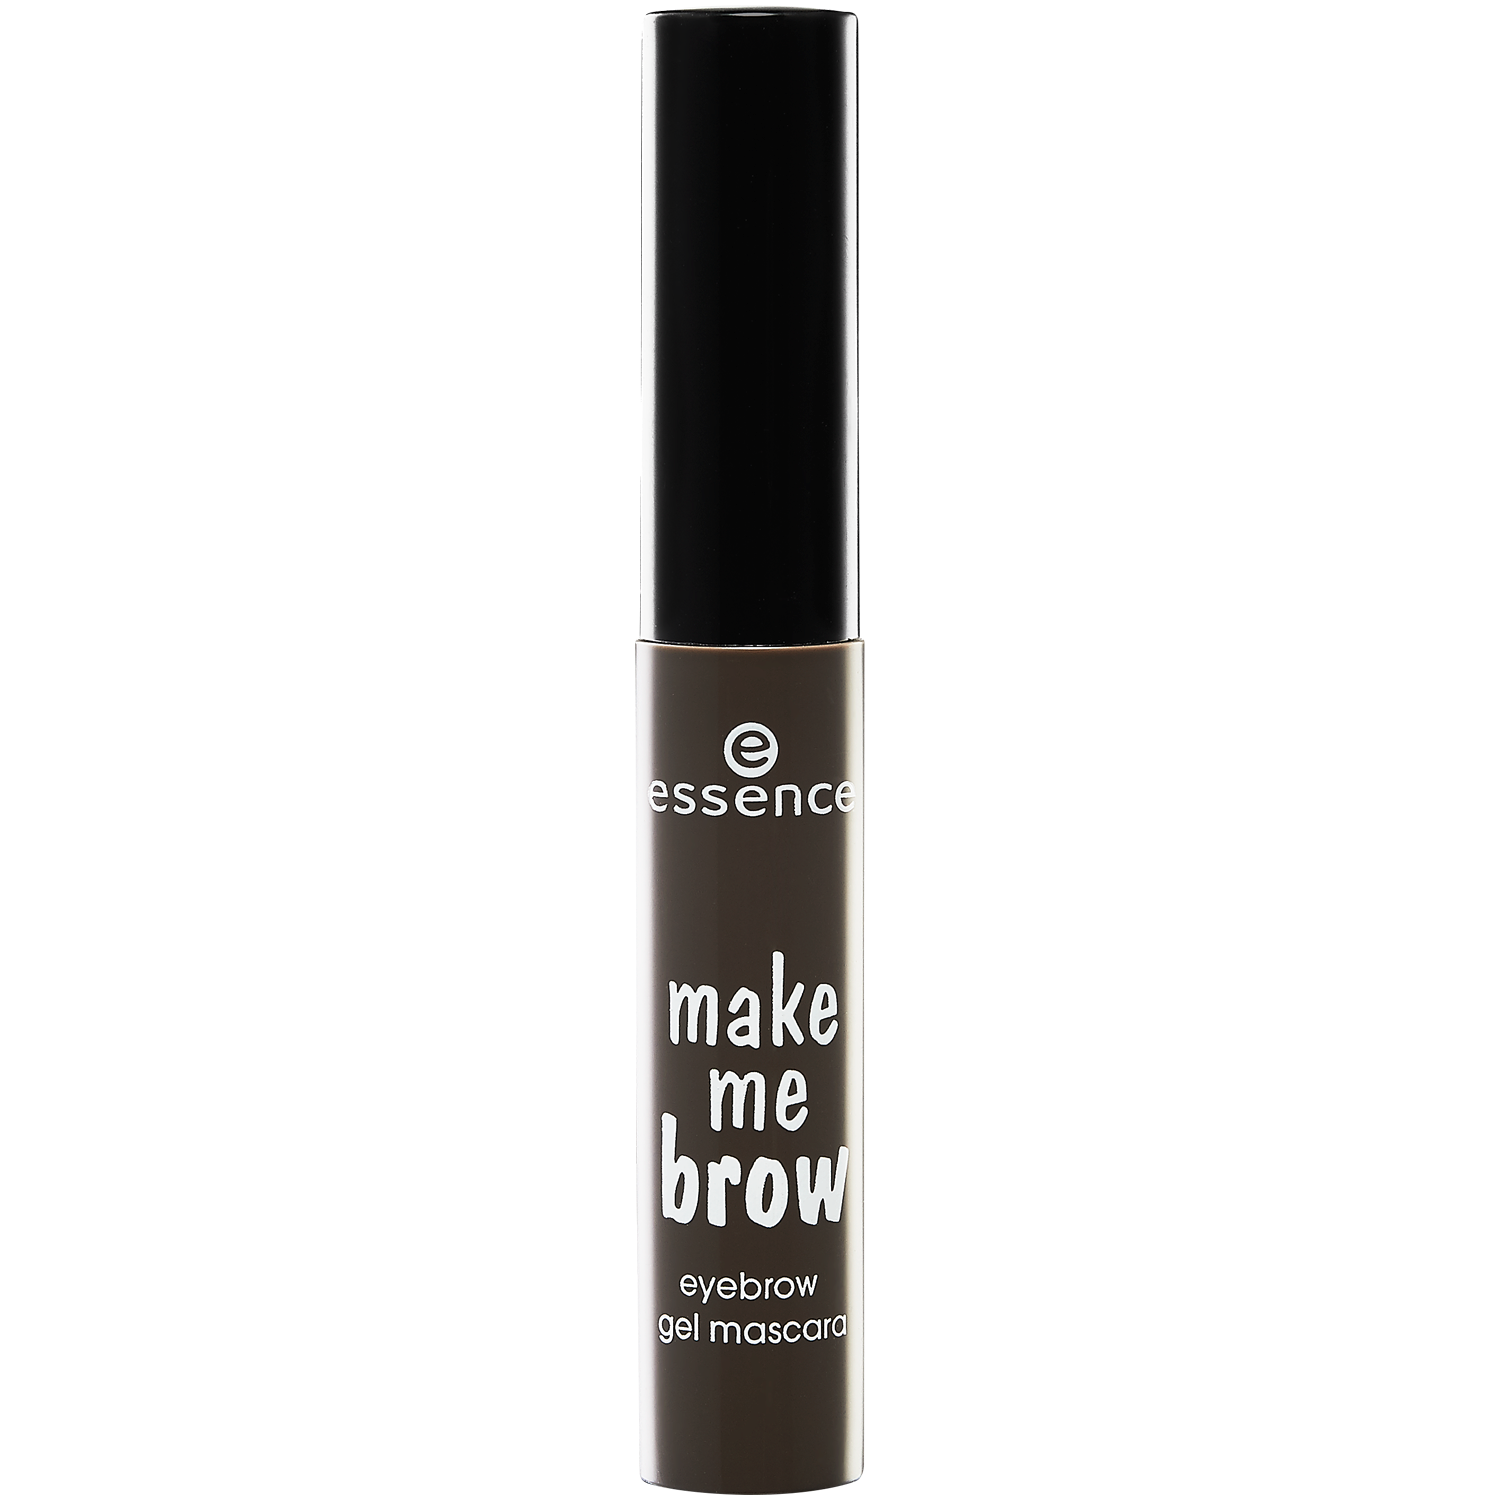 Гель для укладки бровей 02 Essence Make Me Brow, 3,8 гр тушь для бровей sexy eyebrow mascara romanovamakeup ash brown